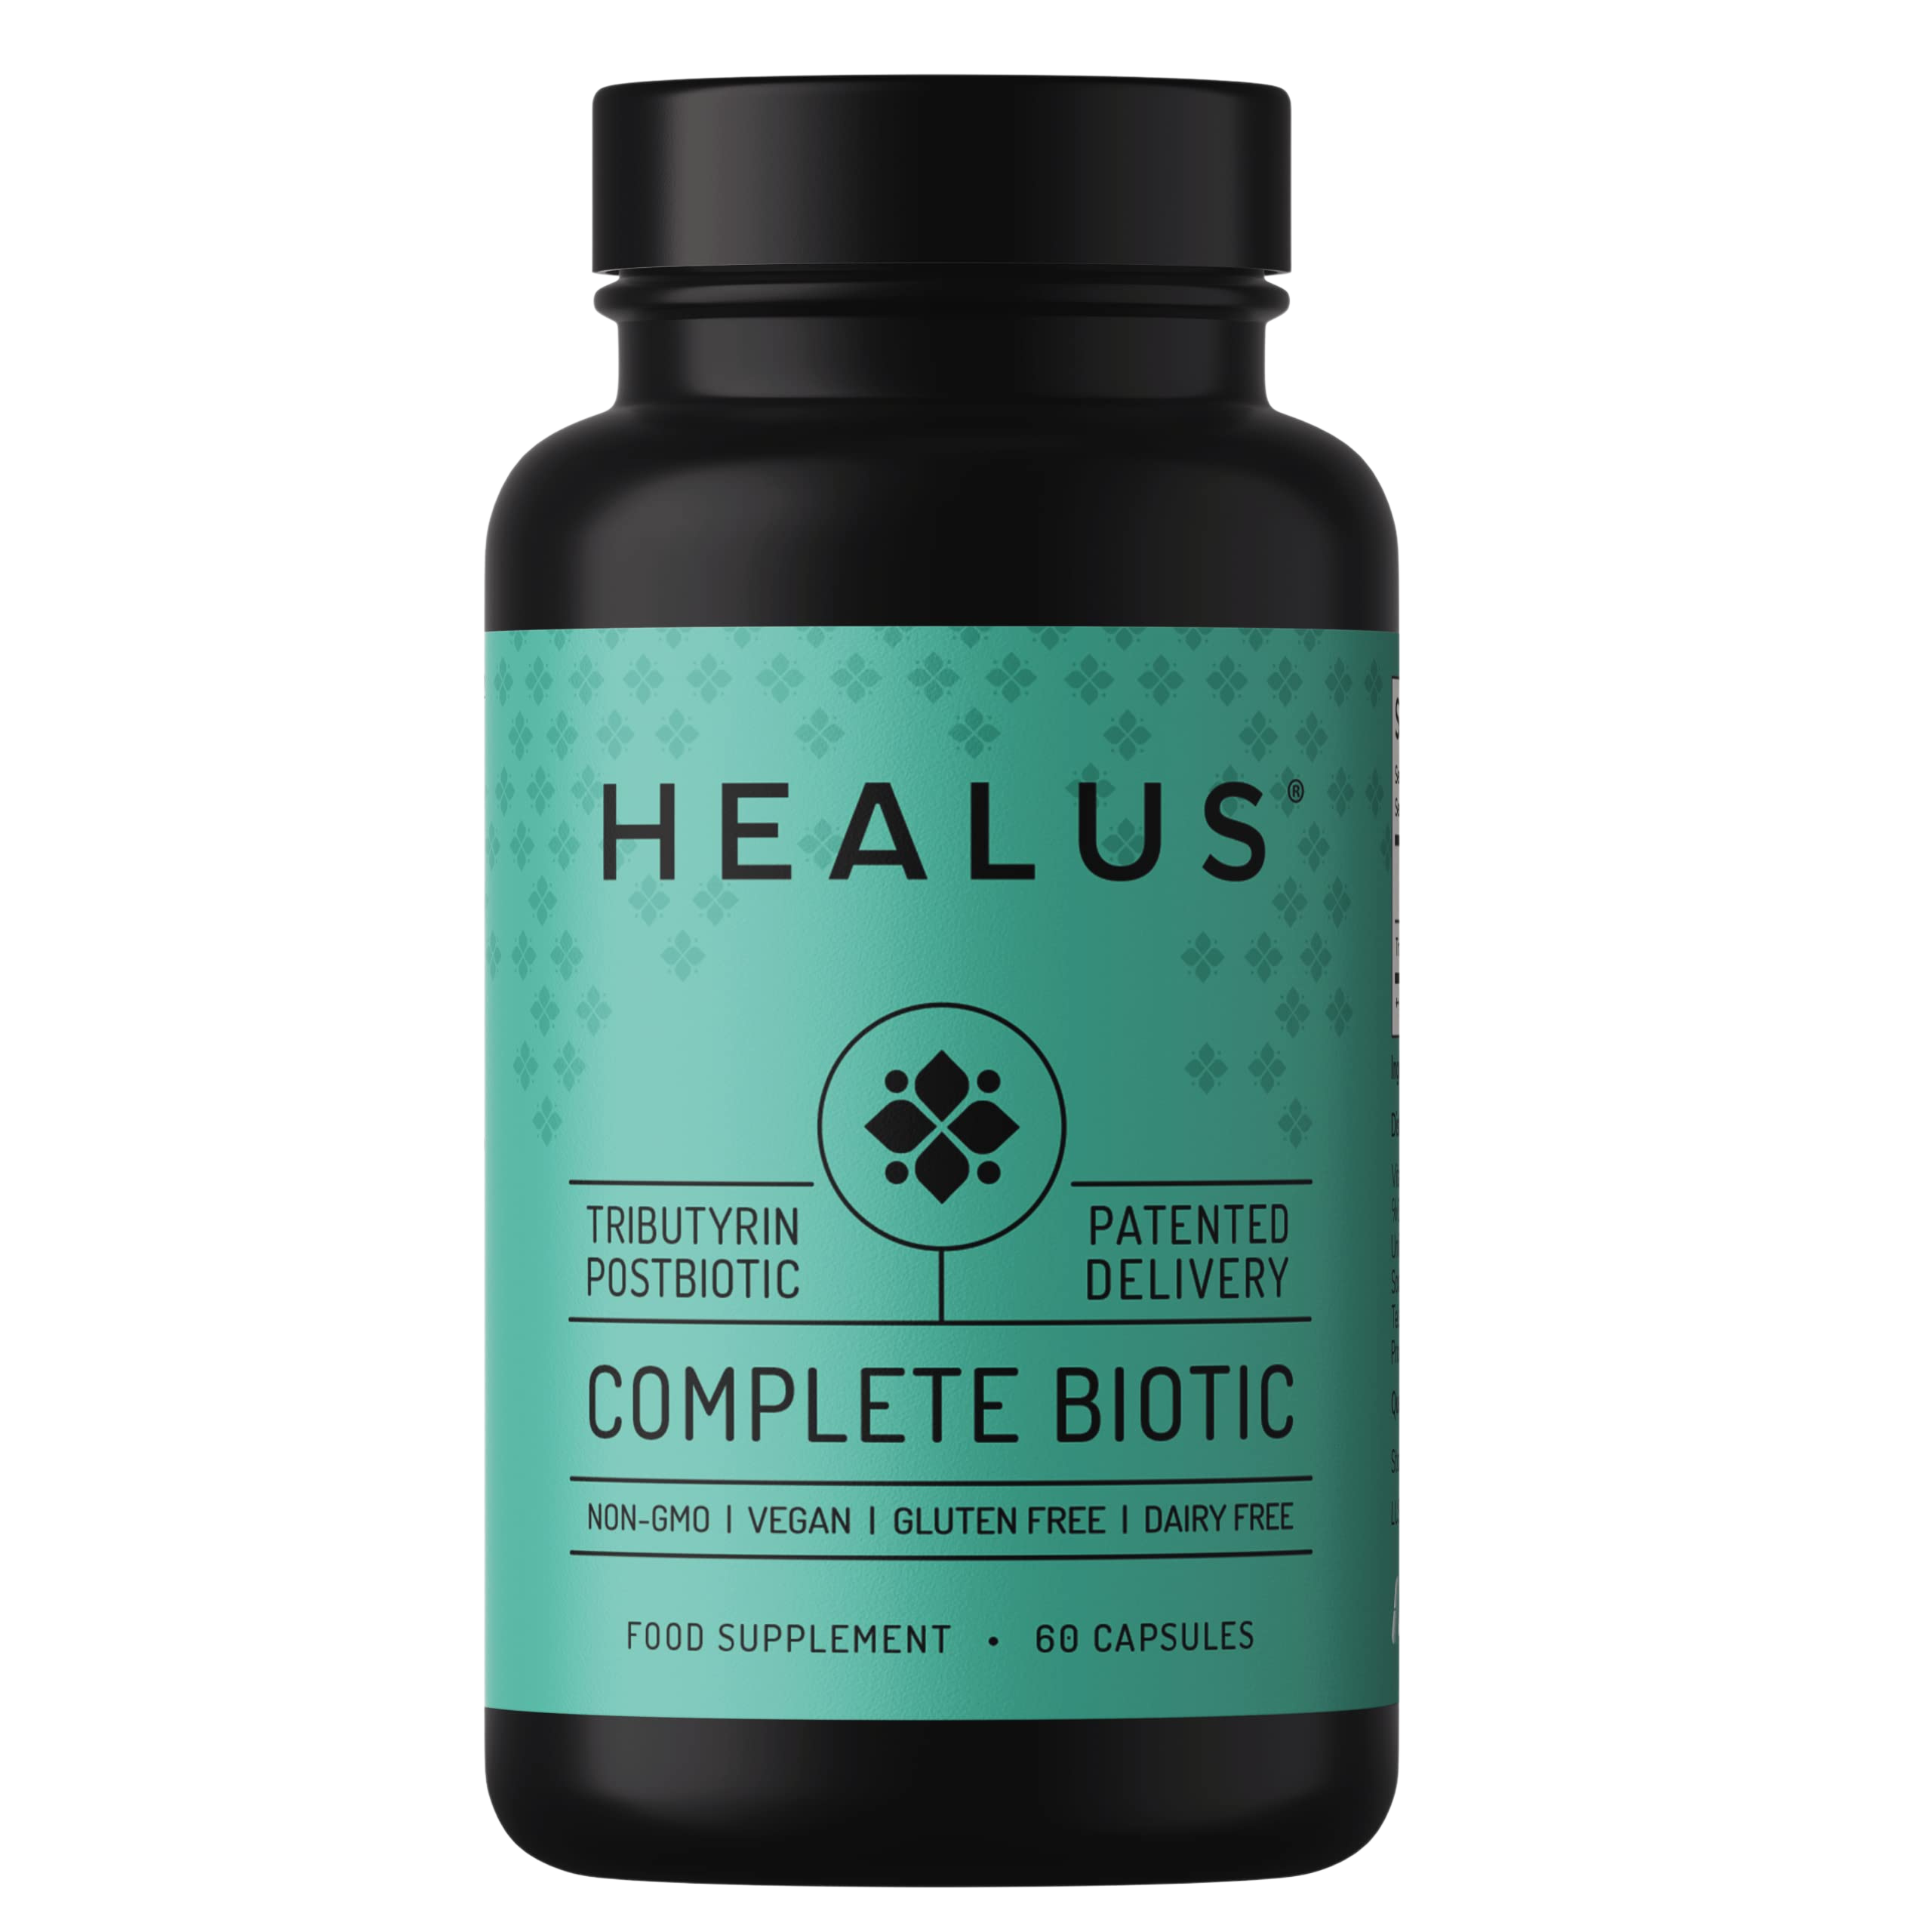 Healus Complete Biotic Tributyrin Supplement